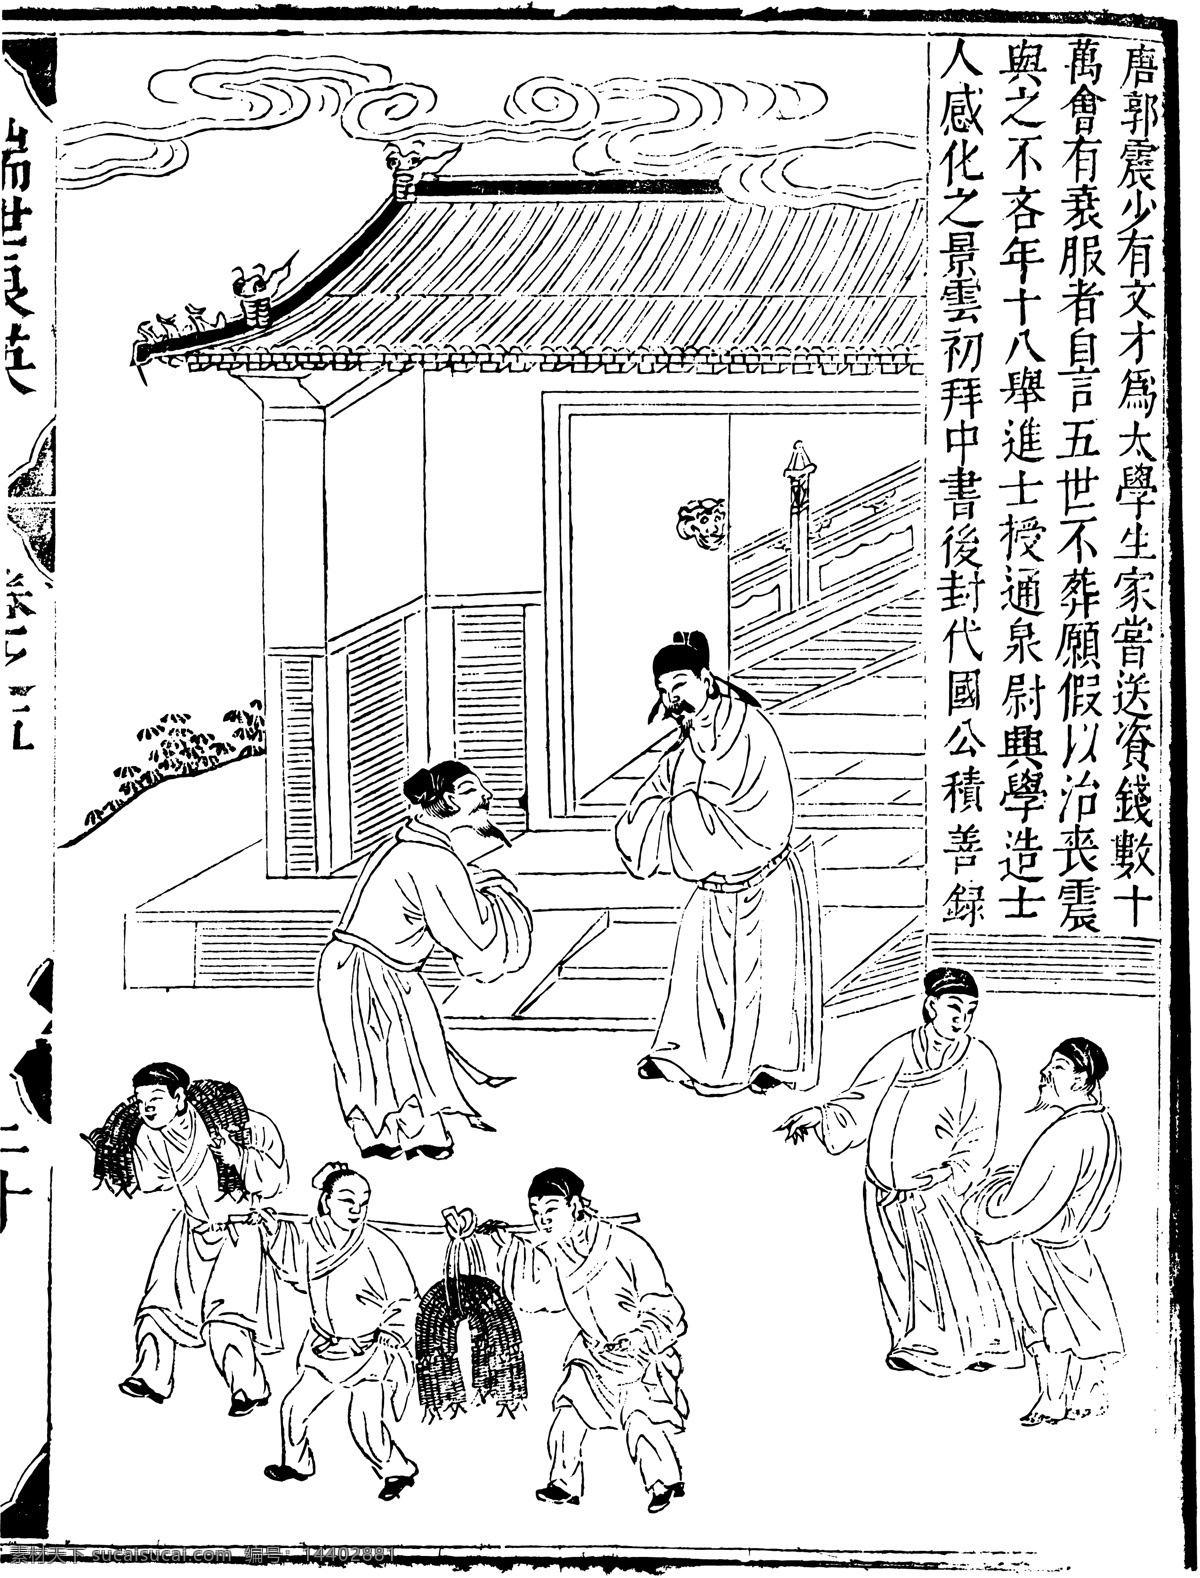 瑞世良英 木刻版画 中国 传统文化 中国传统文化 设计素材 版画世界 书画美术 白色